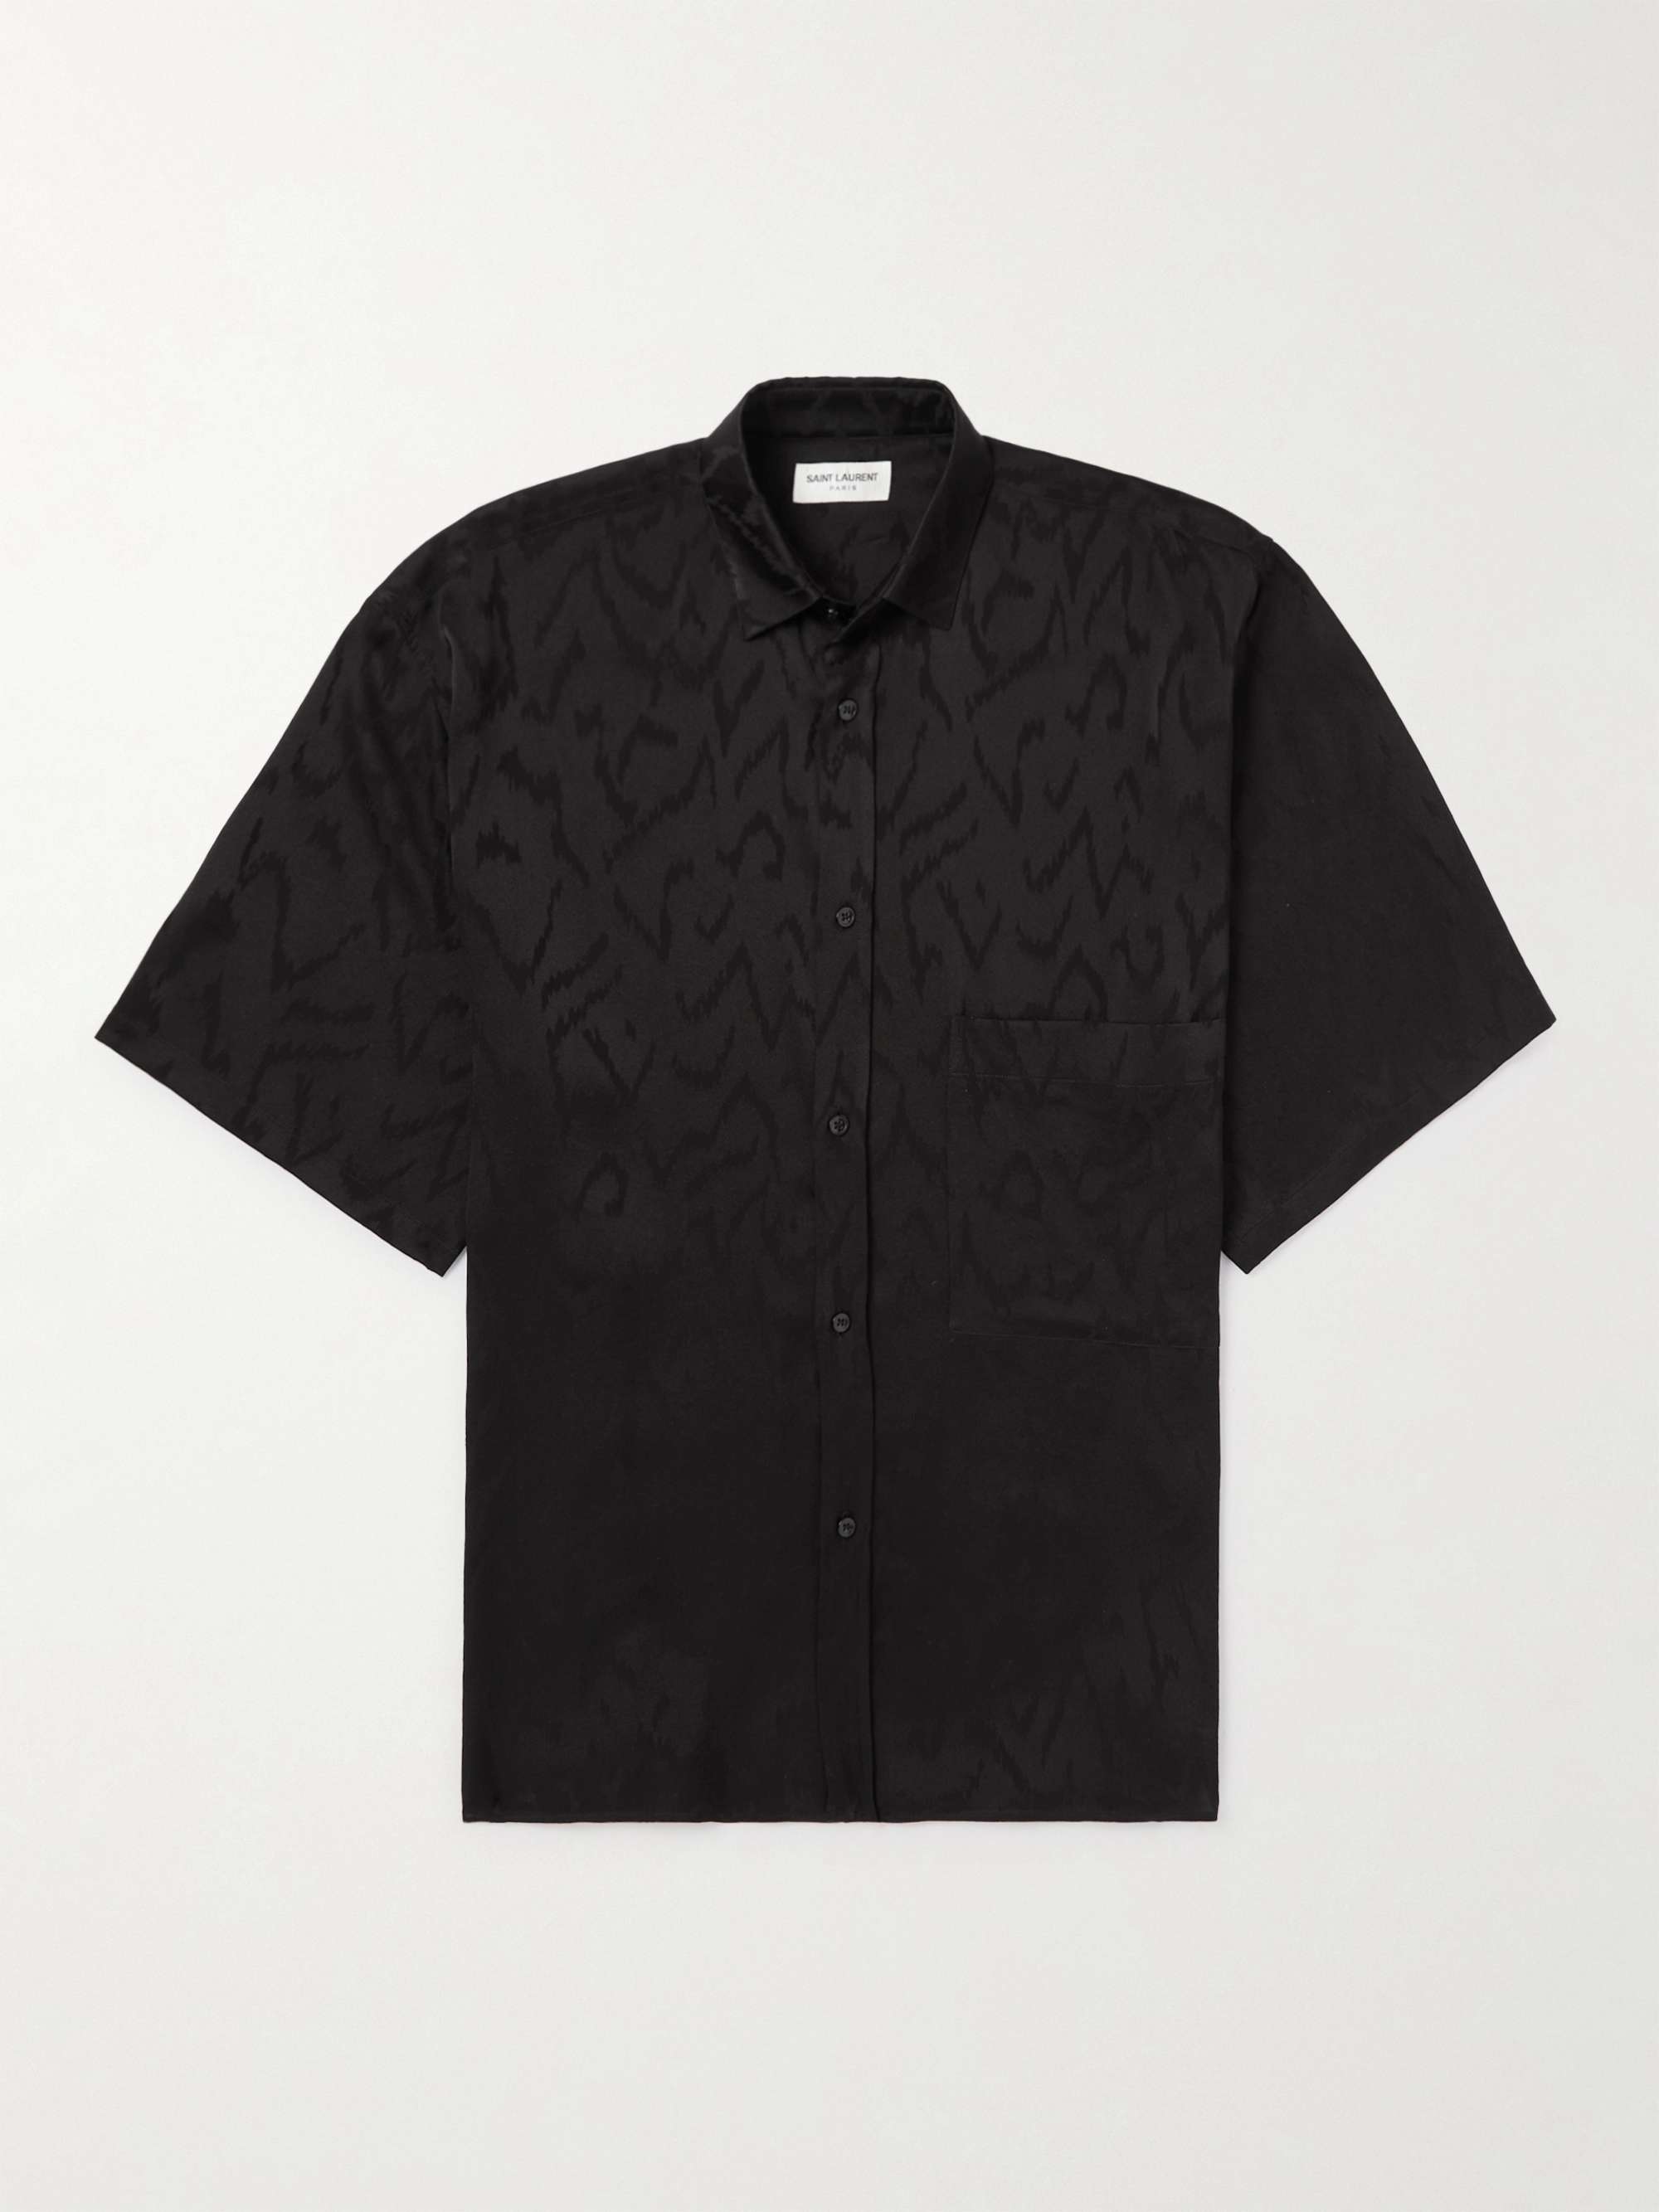 SAINT LAURENT Silk-Jacquard Shirt for Men | MR PORTER